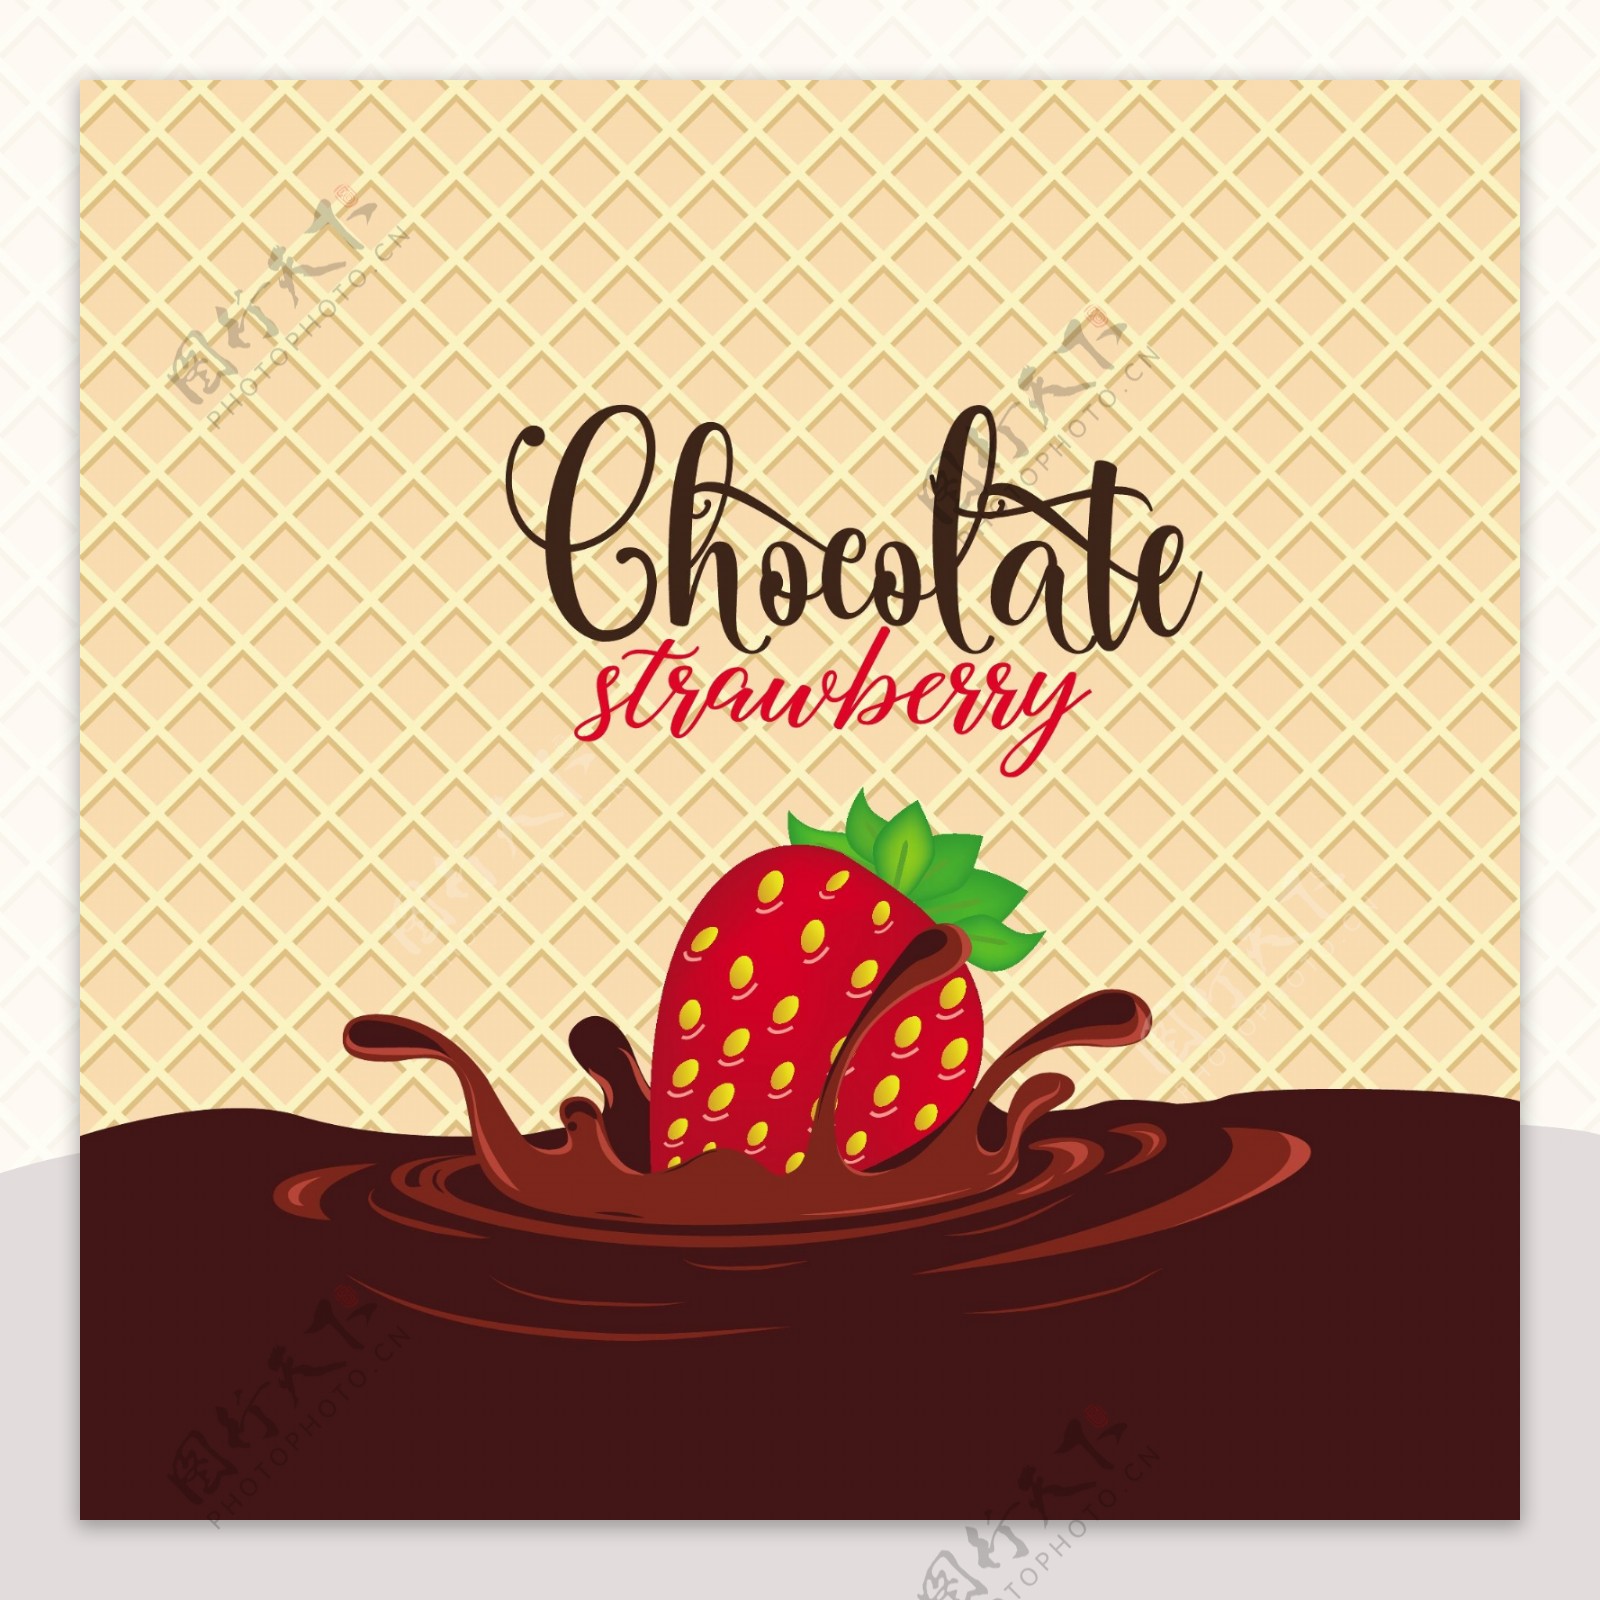 美味草莓巧克力威化饼背景图